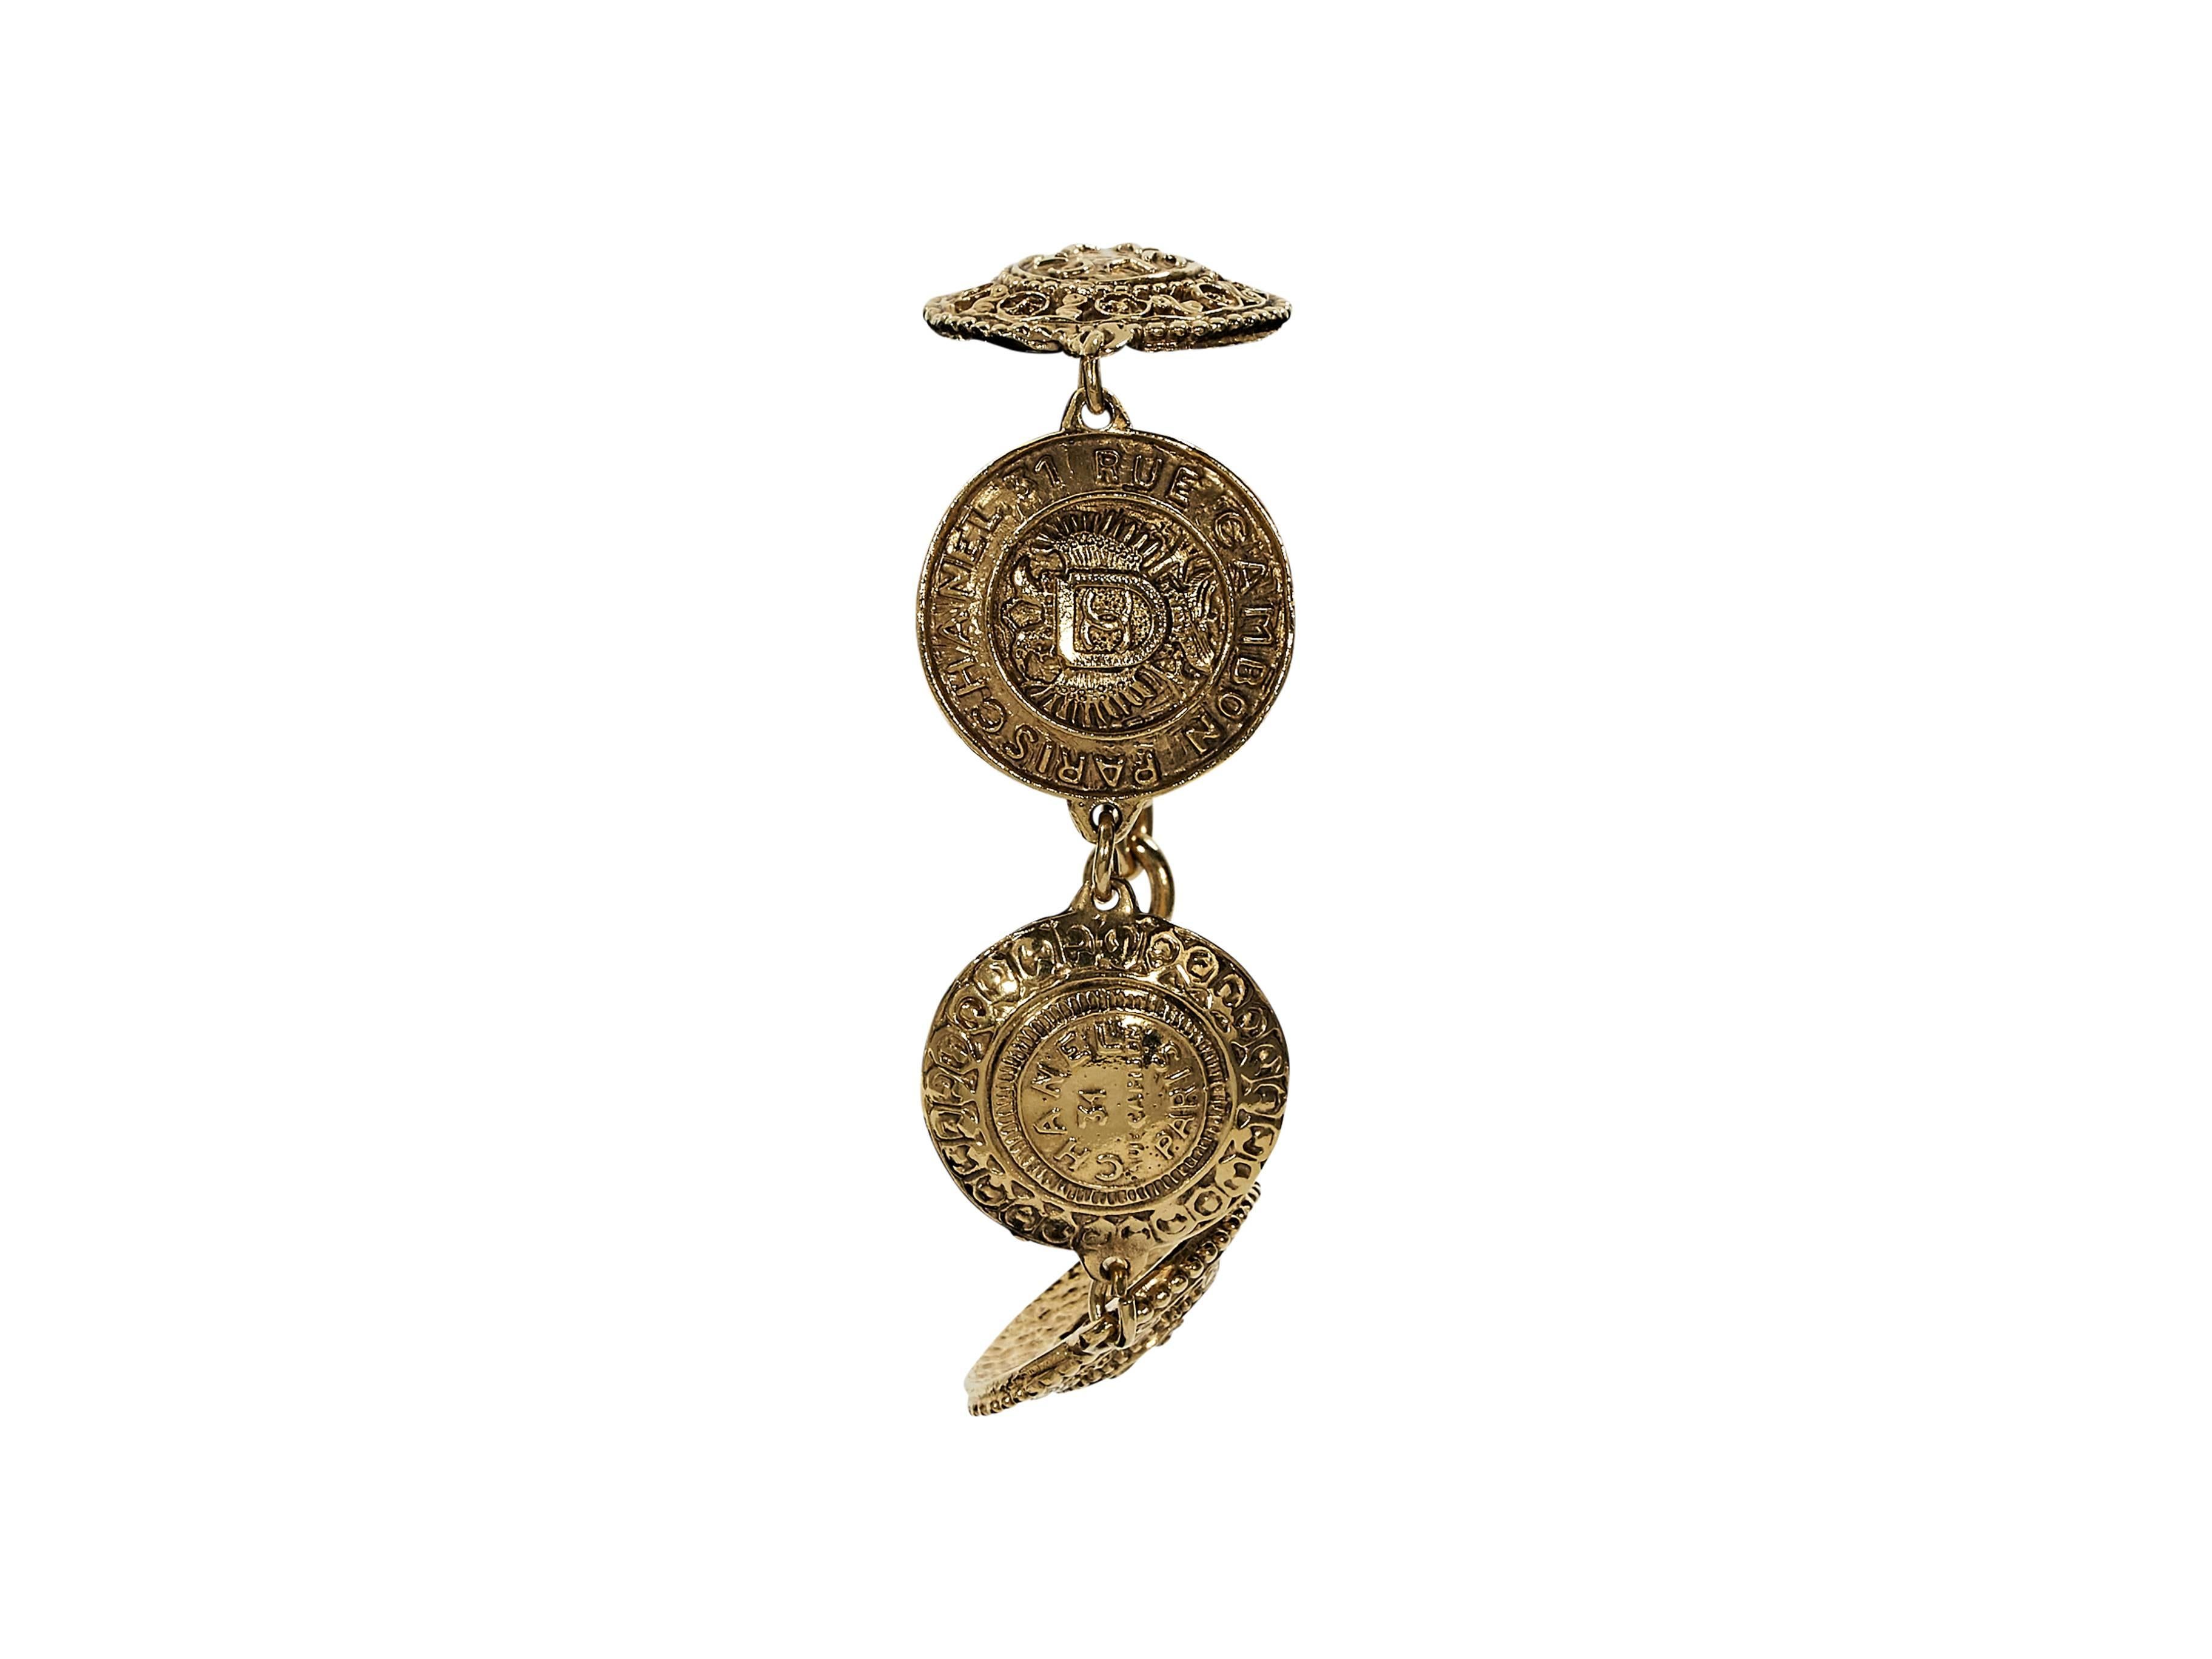 Product details:  Vintage goldtone medallion bracelet by Chanel.  Spring ring closure.  7